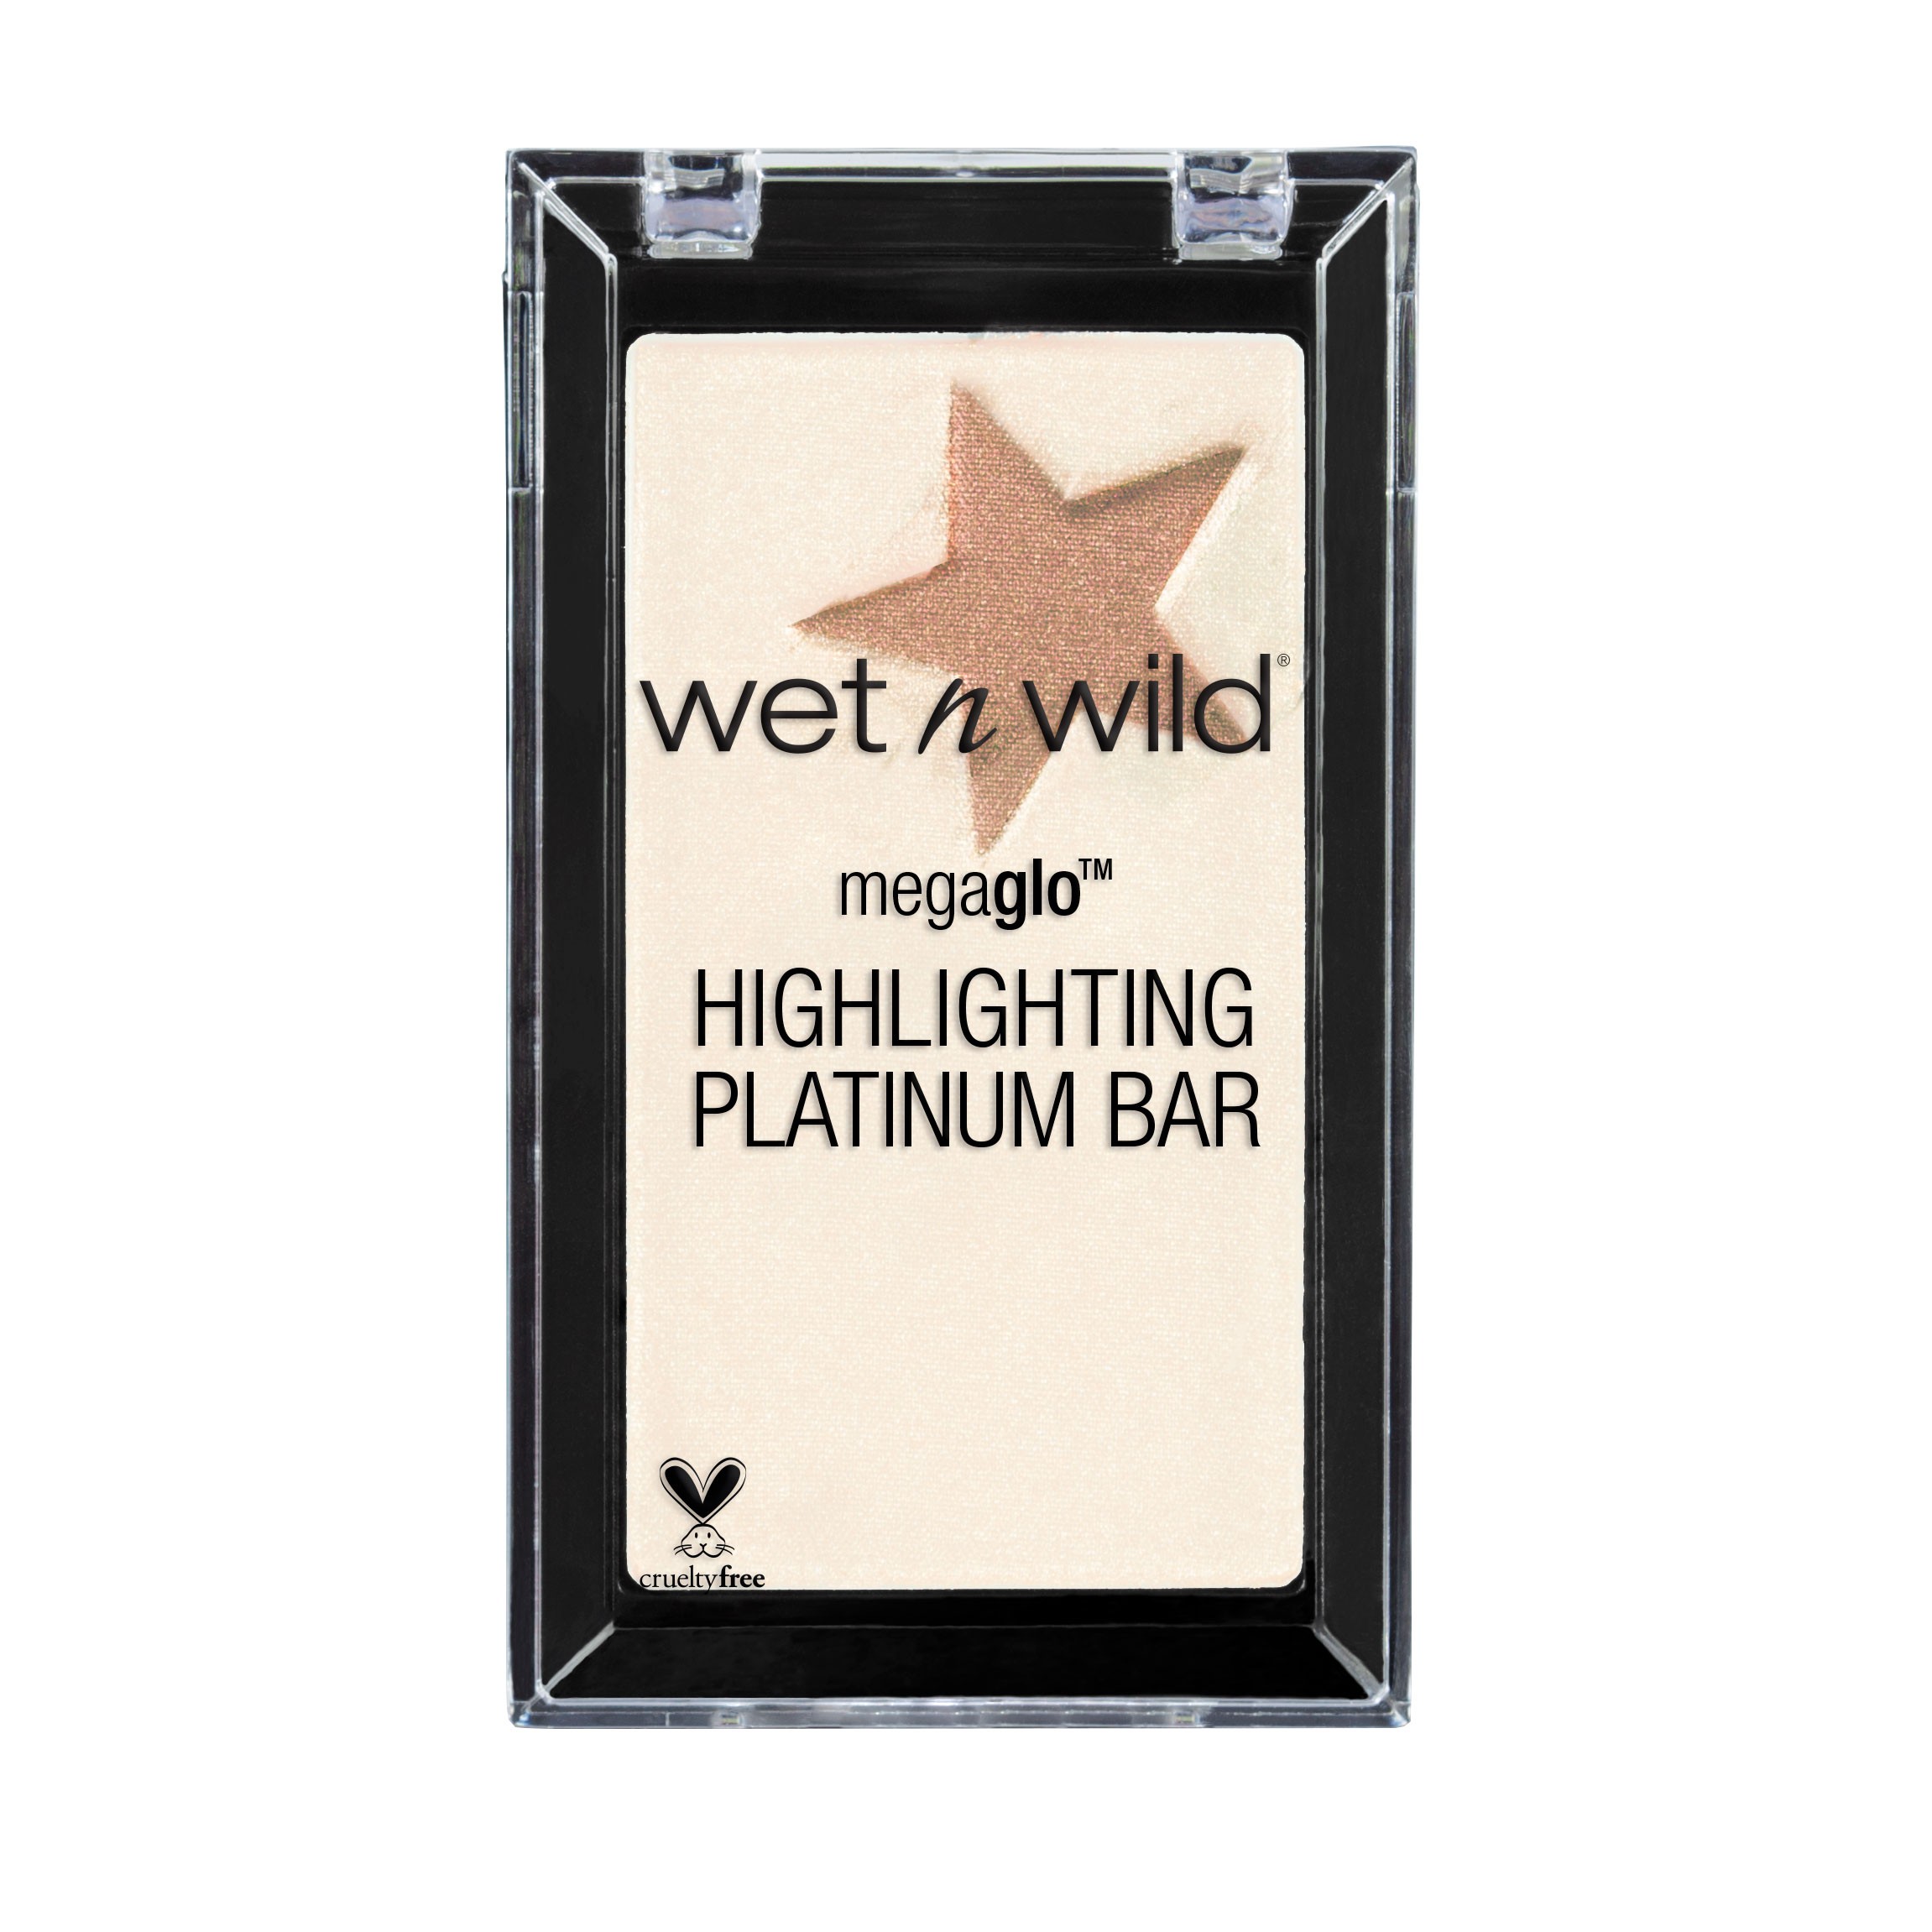 Megaglo Highlighting Platinum Bar